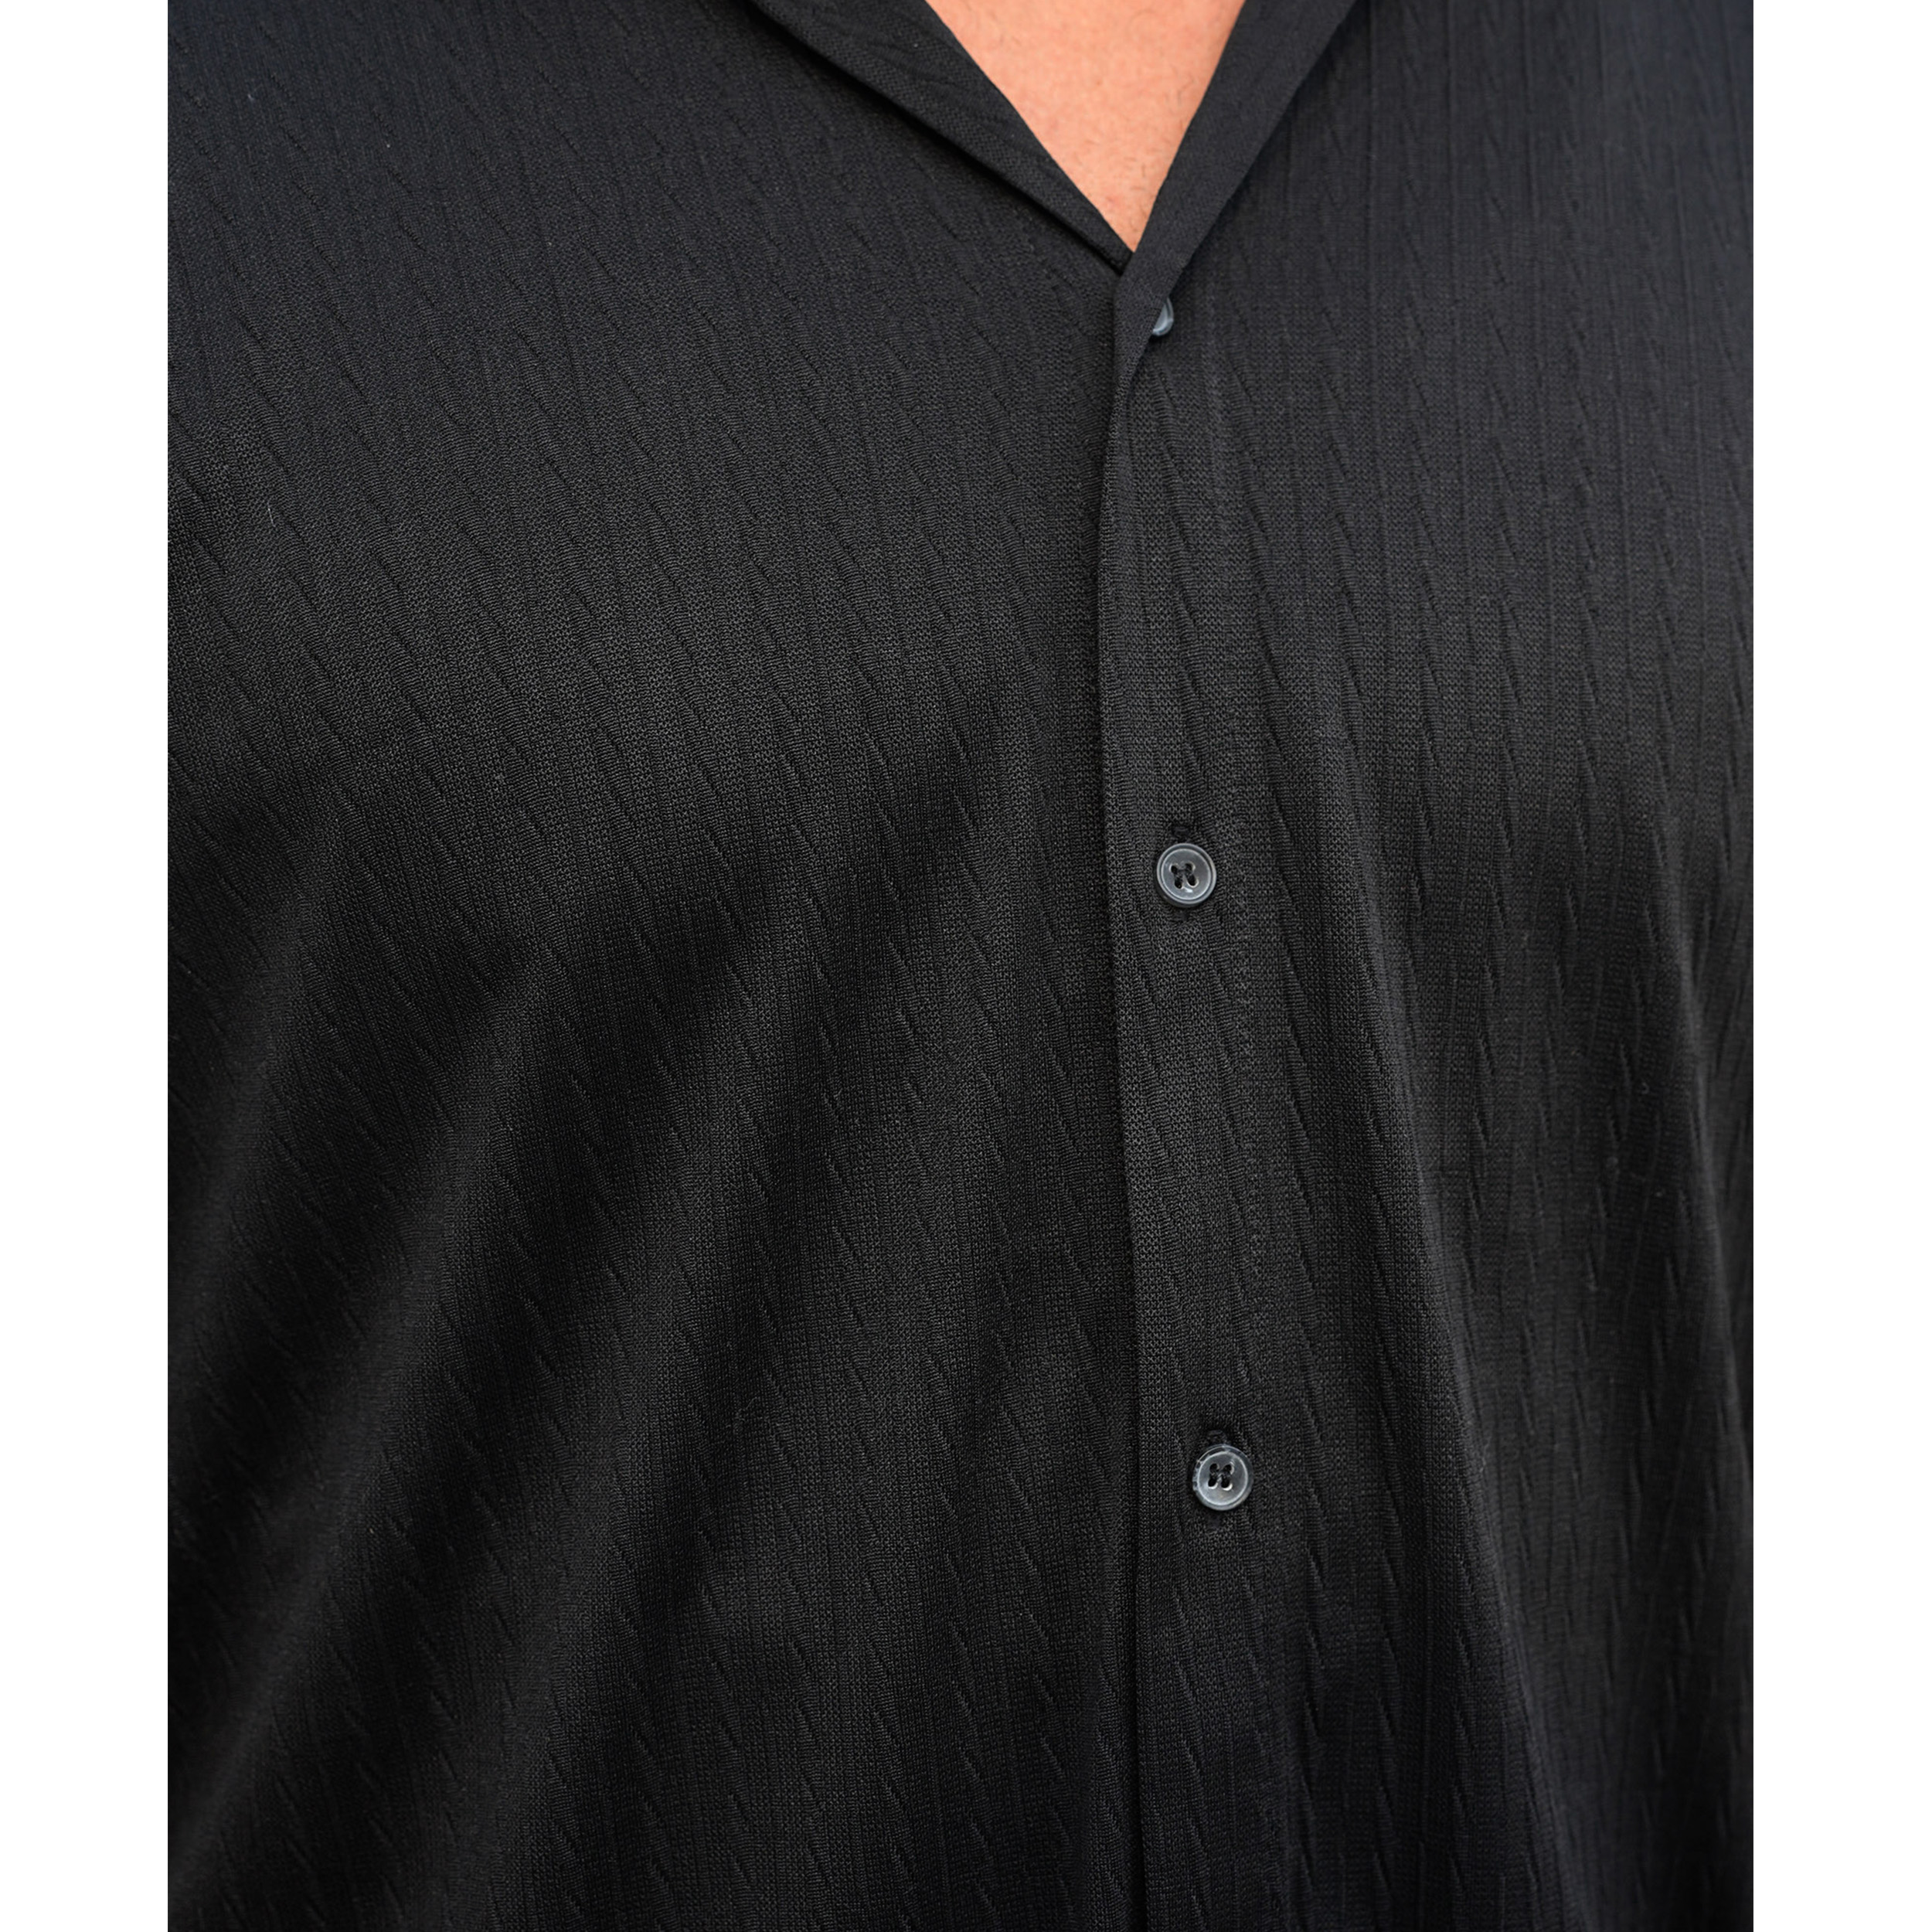 پیراهن آستین کوتاه مردانه مدل کوبایی کد 1079-099